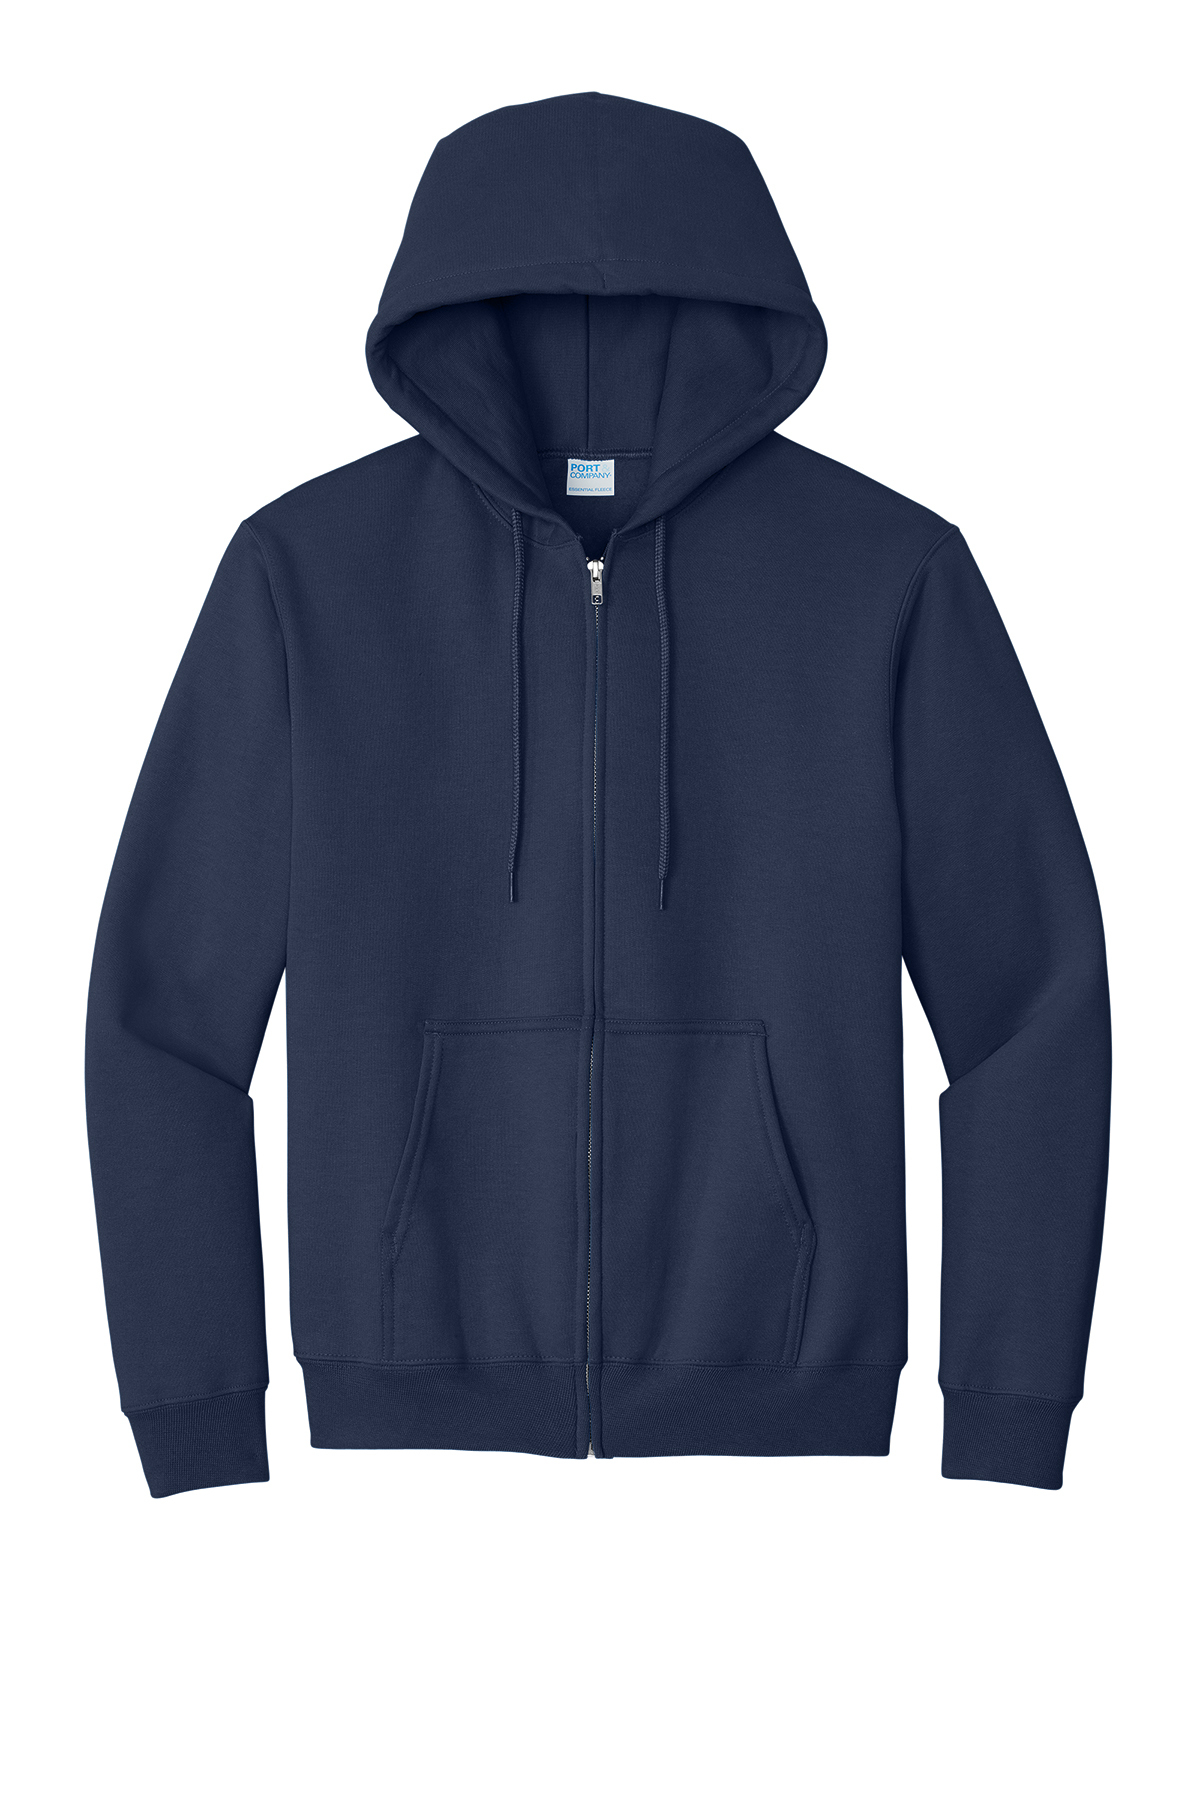 Port & Company Essential Fleece Full-Zip Hooded Sweatshirt 